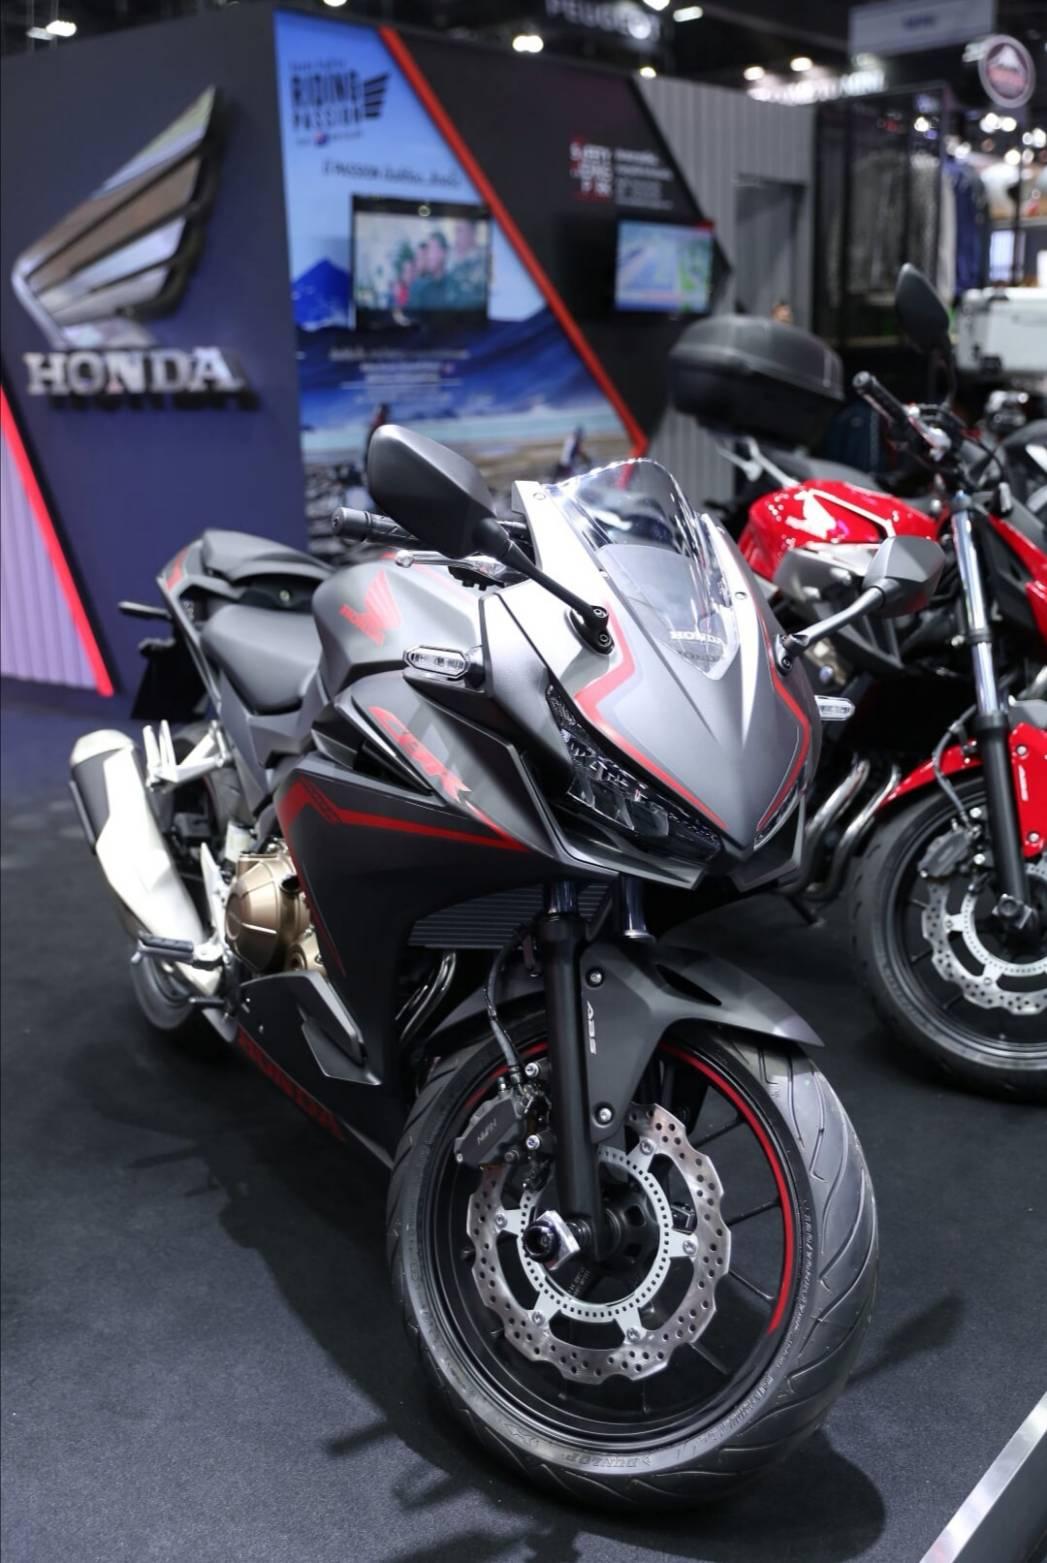 Motor Expo 2019: รวมโปรฯ เด็ดรถจักรยานยนต์ Honda